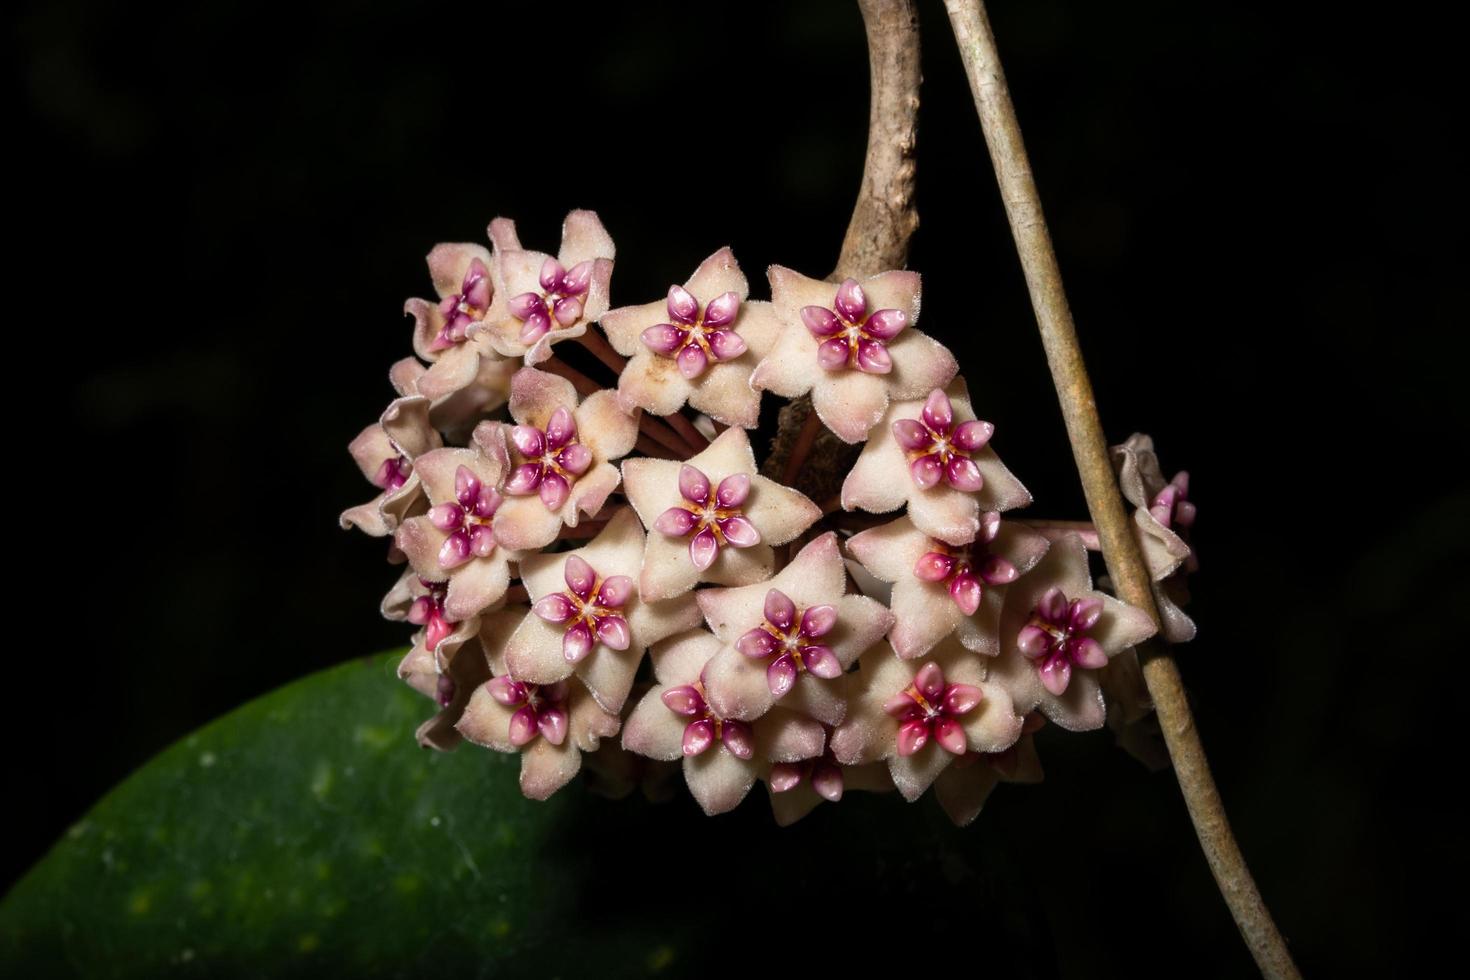 Hoya flowers, close-up photo